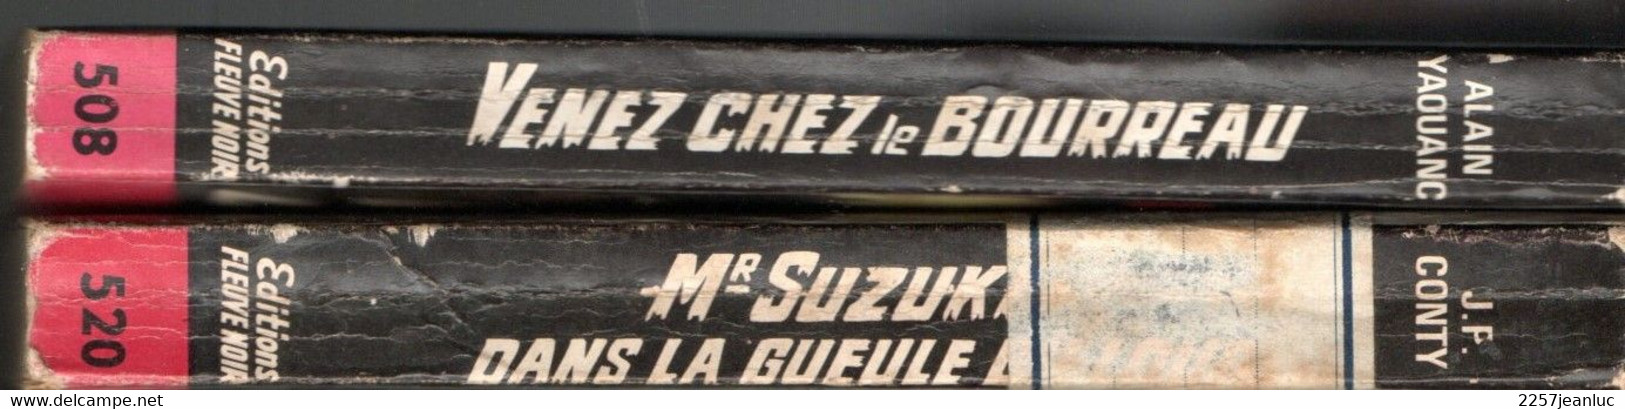 2 Romans Espionnage  -  Editions Fleuve Noir  N: 508  Venez Chez Le Bourreau Et N: 520 Suzuki Dans La Gueule ..  De 1965 - Fleuve Noir